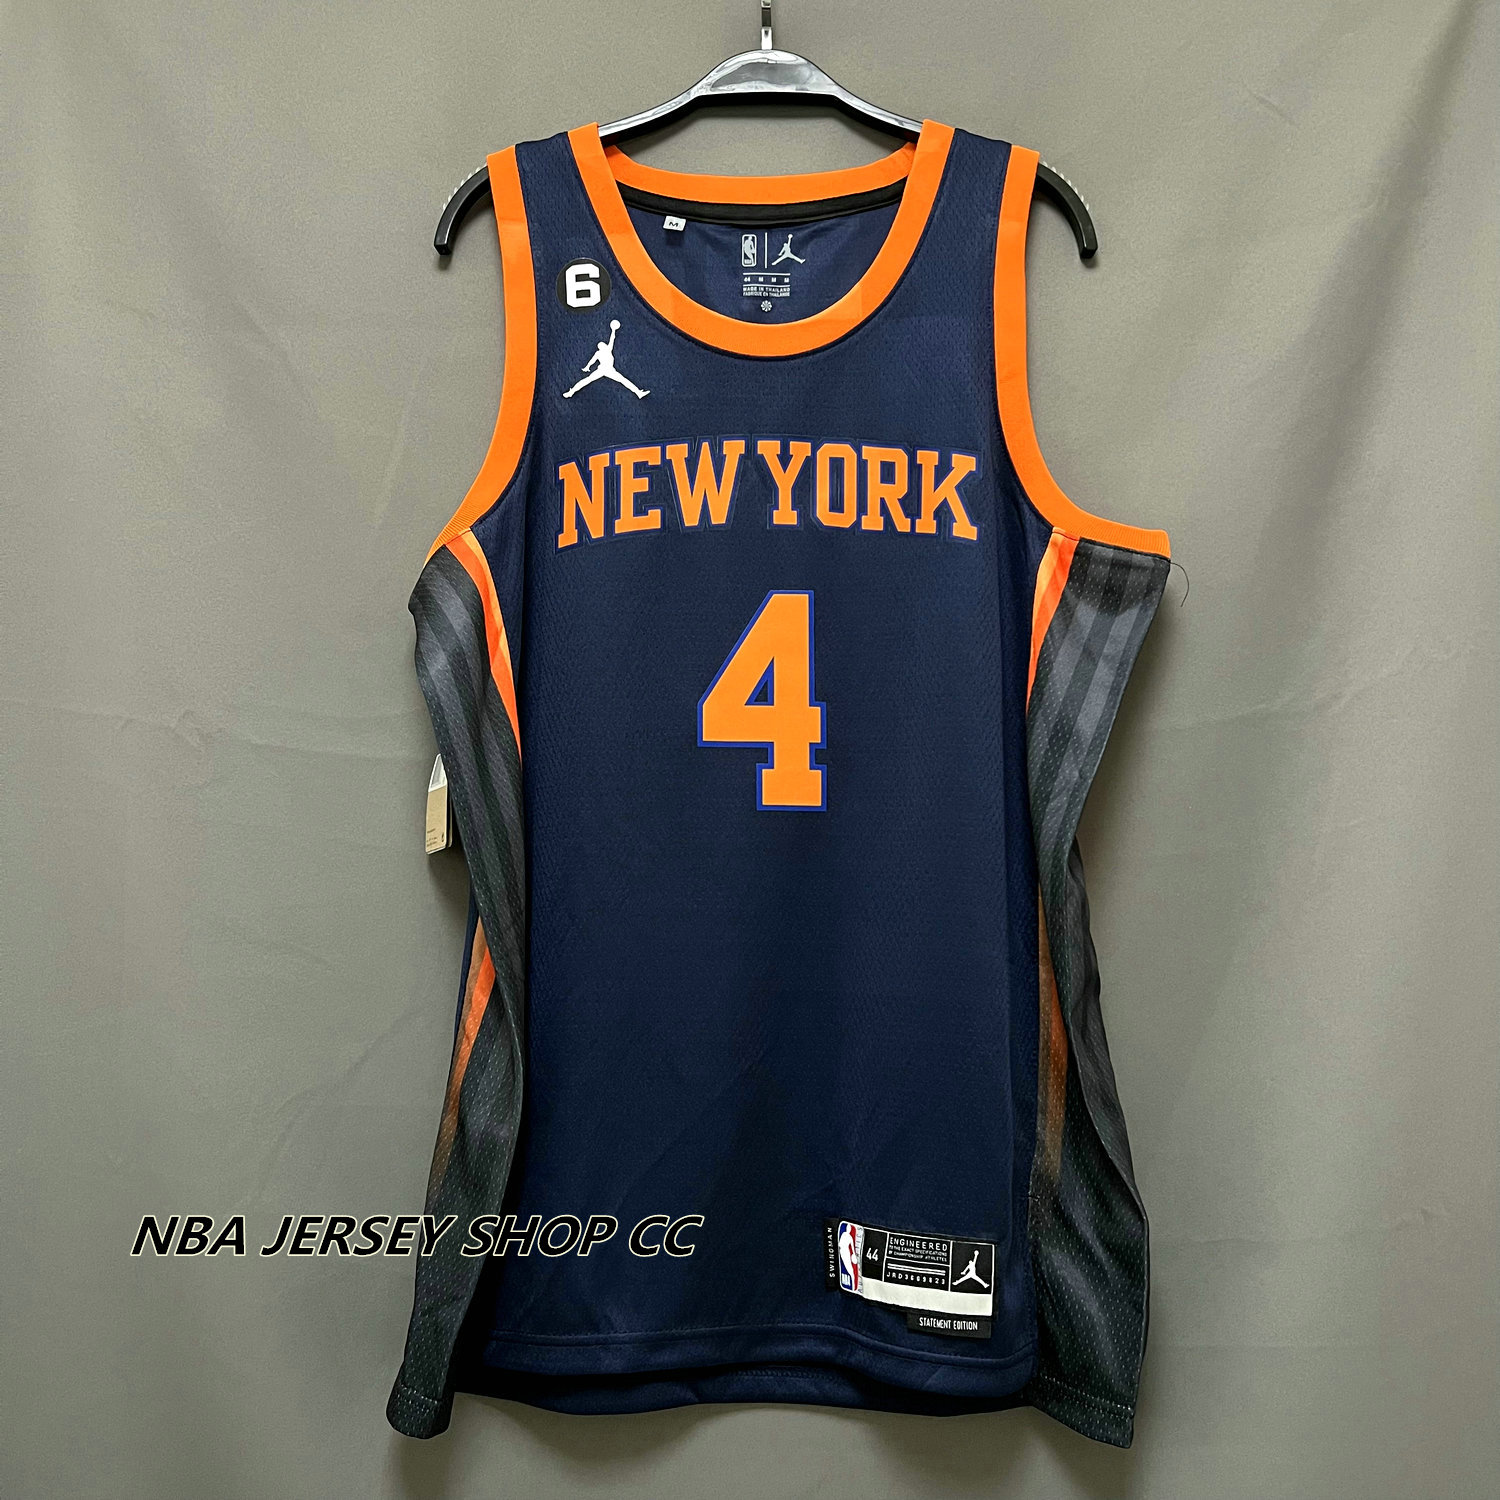 New York Knicks Statement Edition Jordan Dri-FIT NBA Swingman